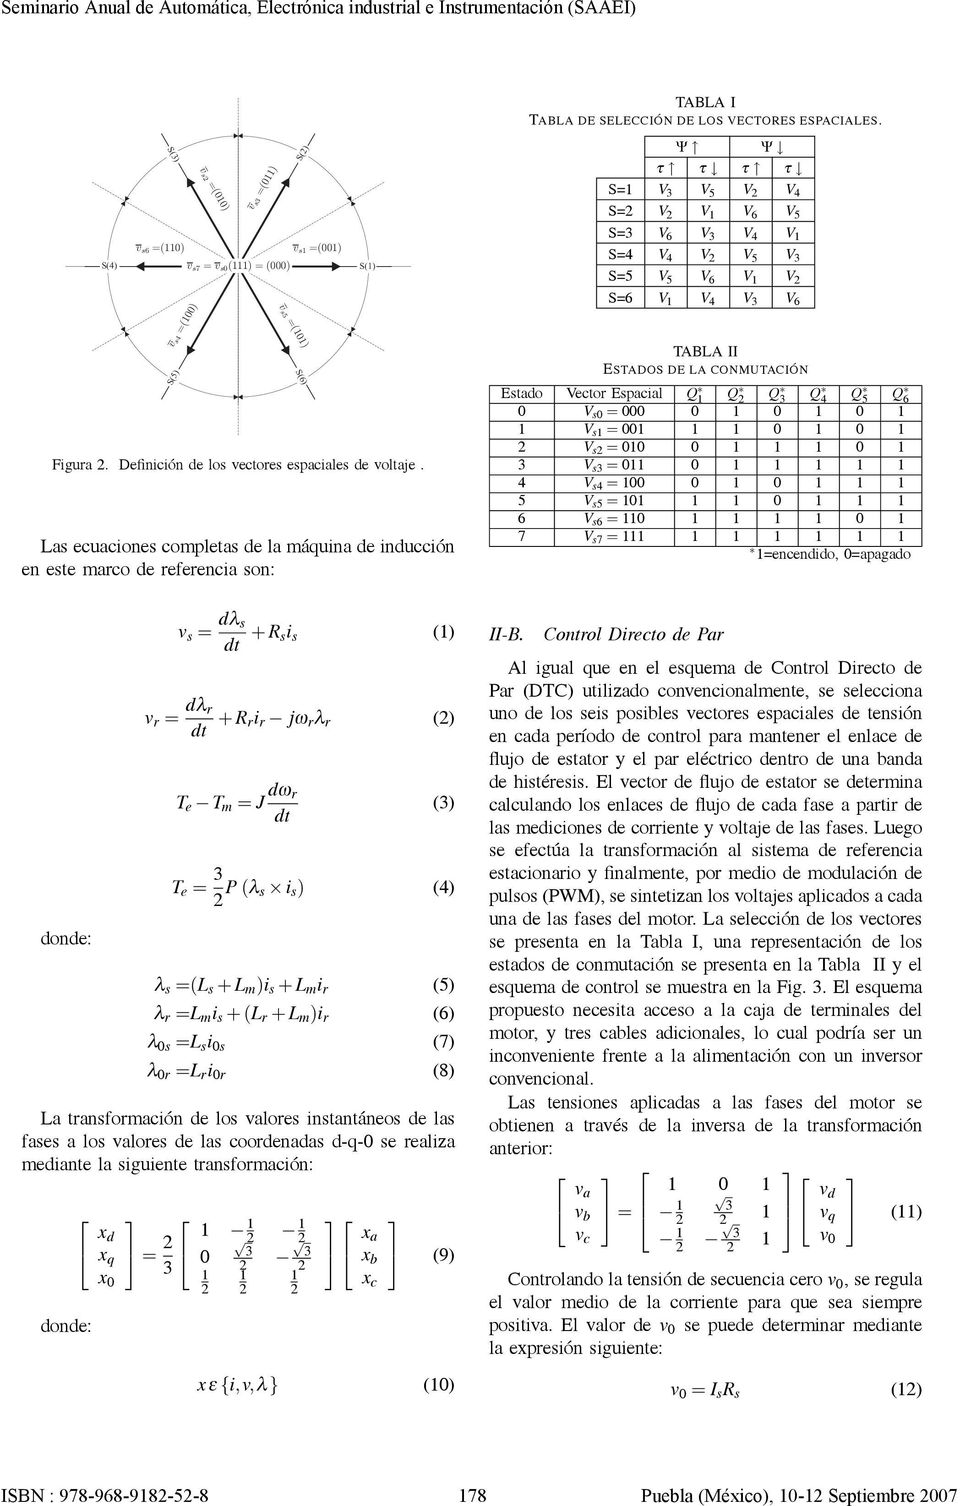 II ESTADOS DE LA CONMUTACIÓN Figura. Definición de los vectores espaciales de voltaje.